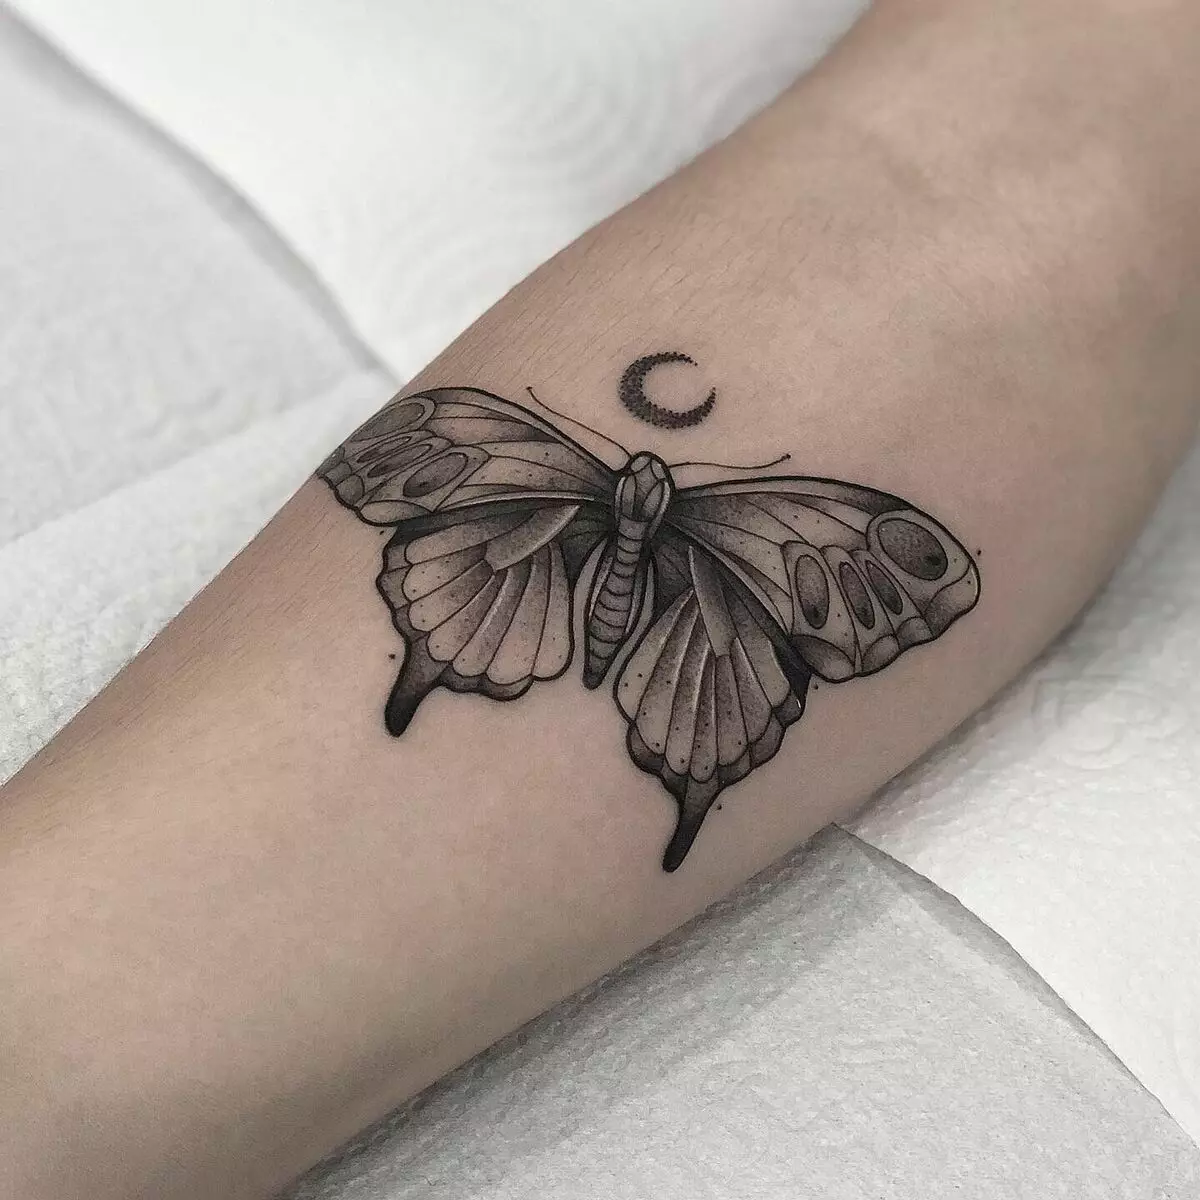 Τατουάζ με πεταλούδες (74 φωτογραφίες): η αξία των τατουάζ και τα παραδείγματα σκίτσων, τατουάζ στο χέρι και στο πόδι, στην κάτω πλάτη και στην πλάτη, στο λαιμό και σε άλλες περιοχές, μικρό και μεγάλο τατουάζ 13730_19